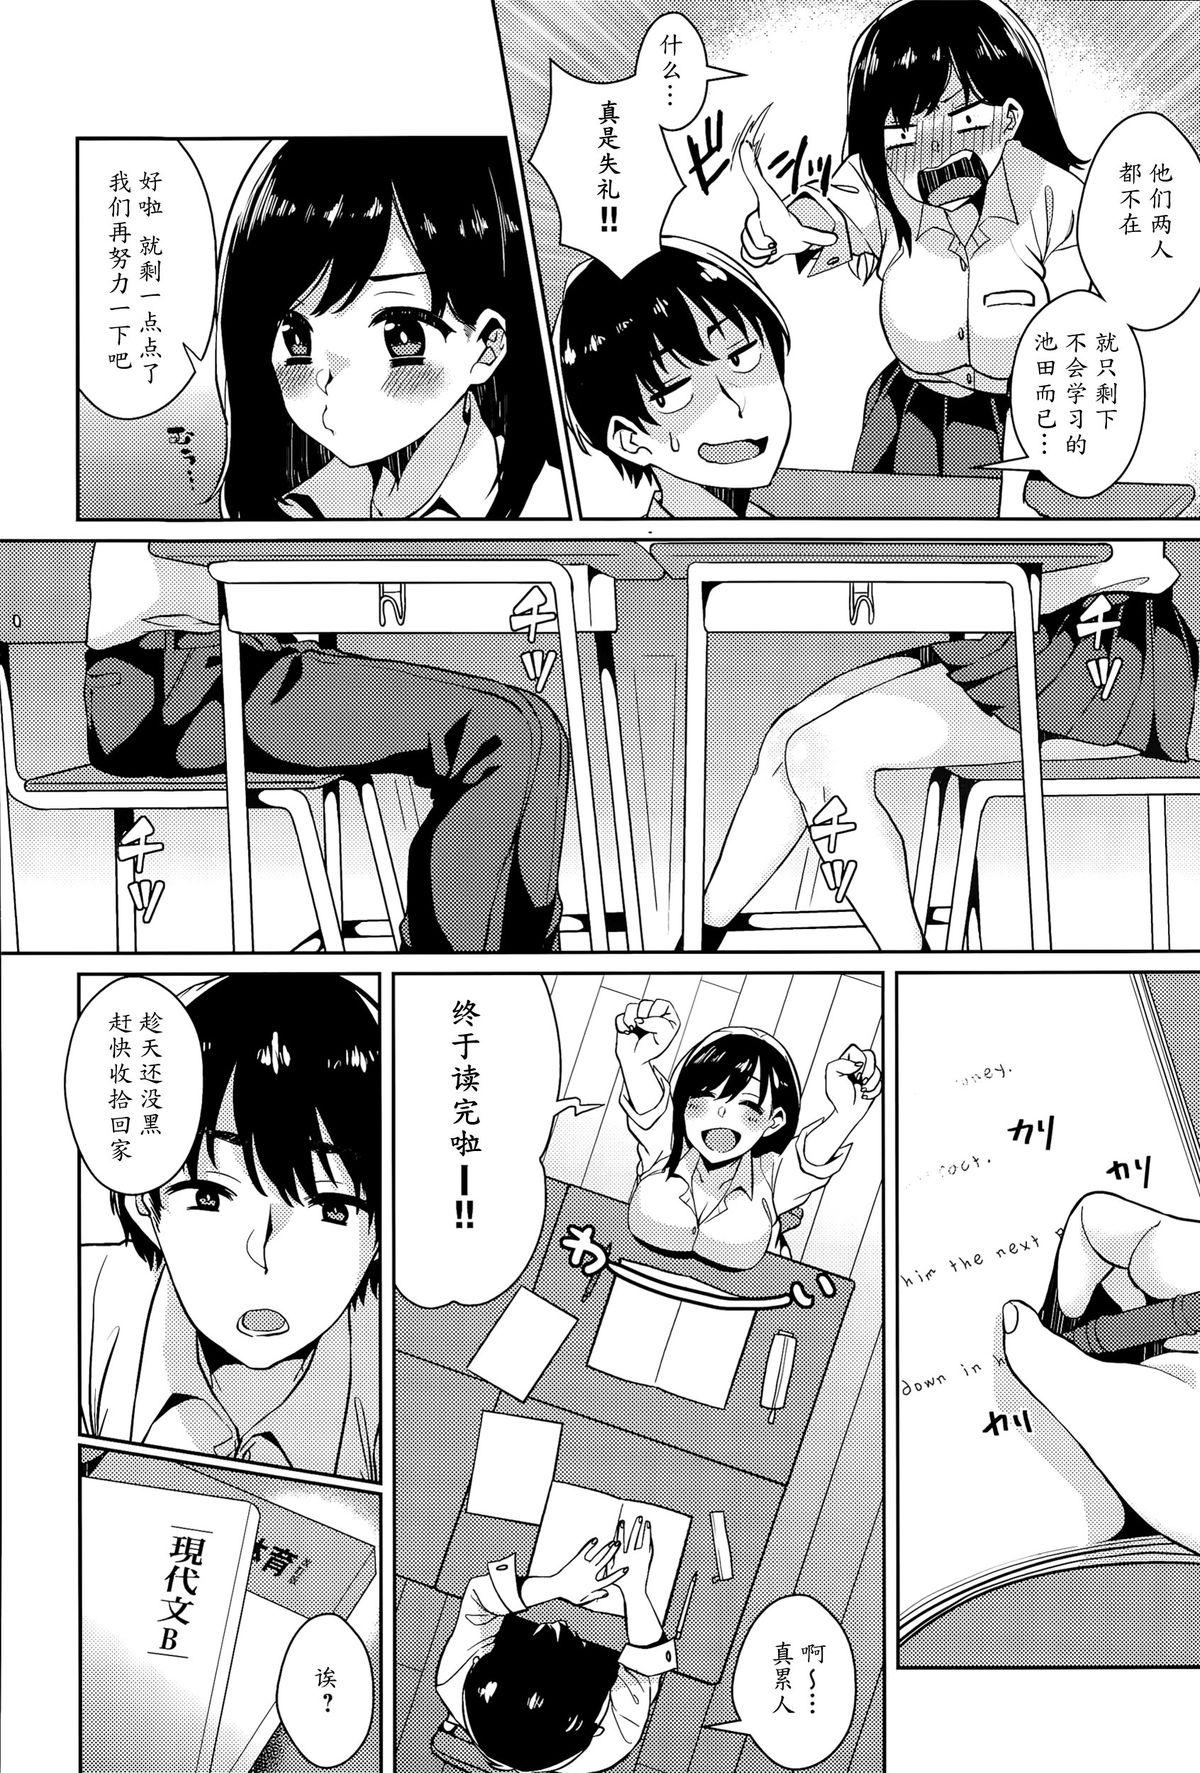 De Quatro Himitsu no Jitsugi Enshuu Teenporn - Page 2